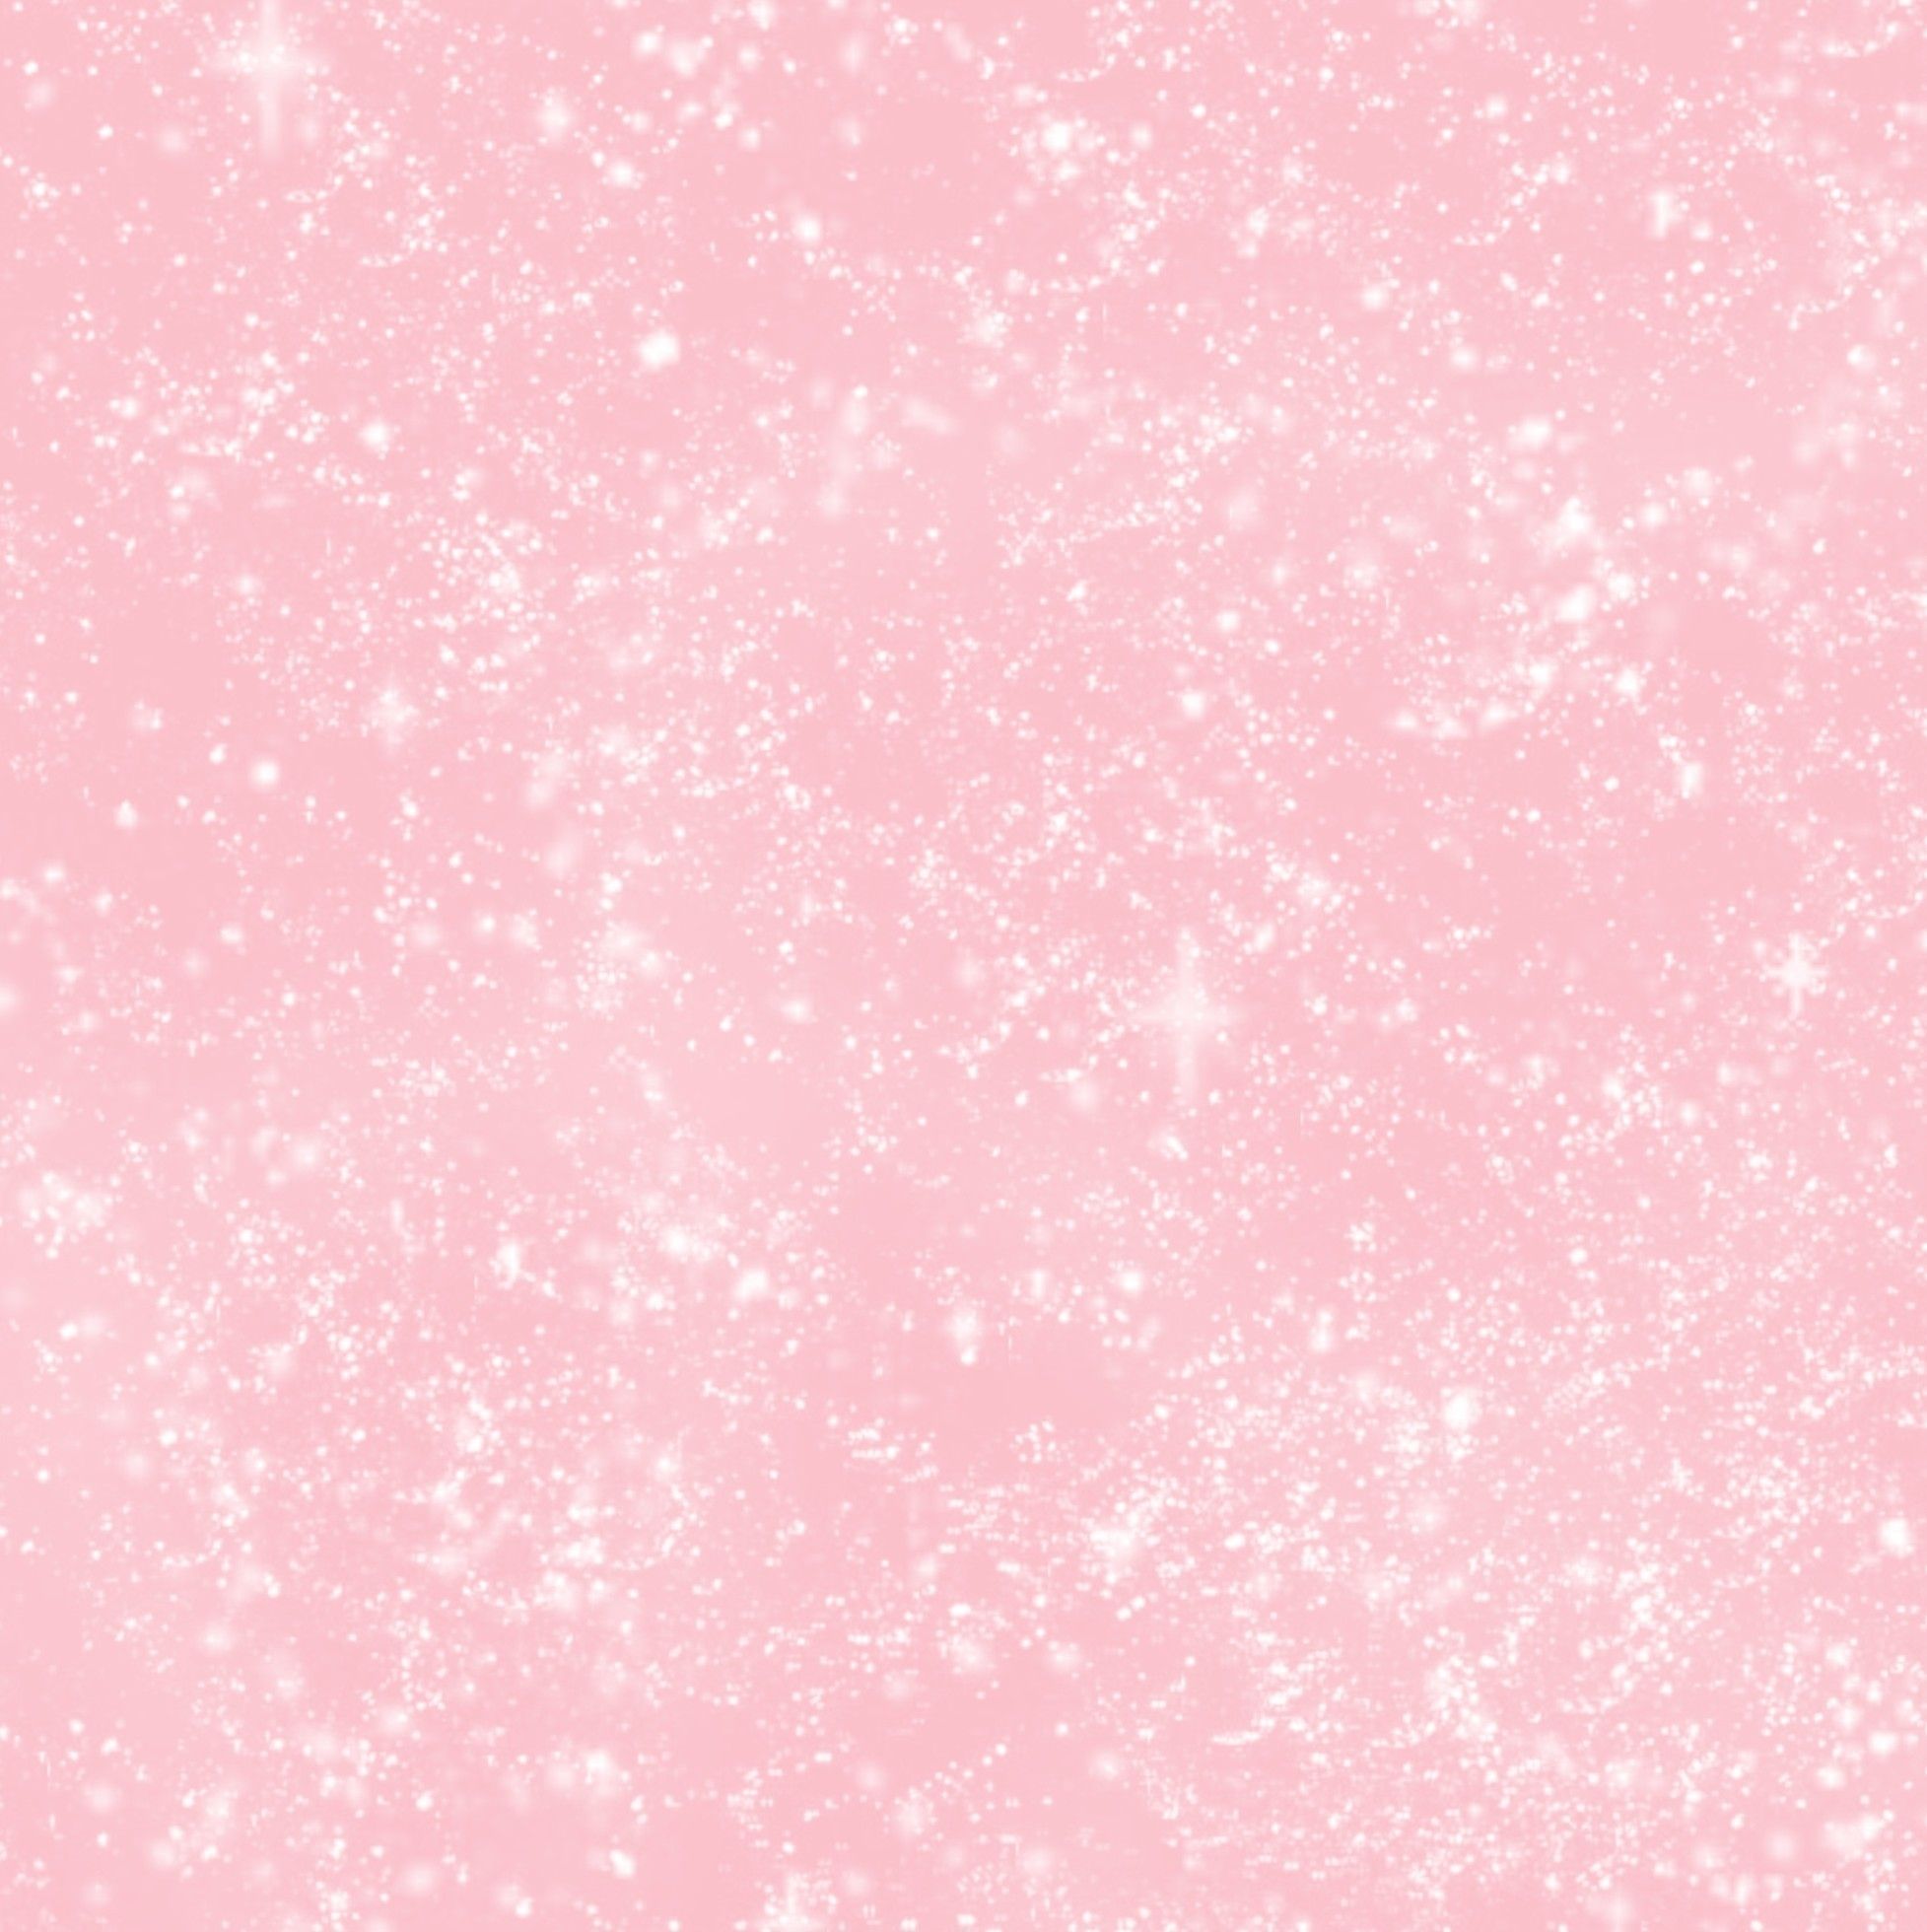 Cute Light Pink Wallpaper Free Cute Light Pink Background